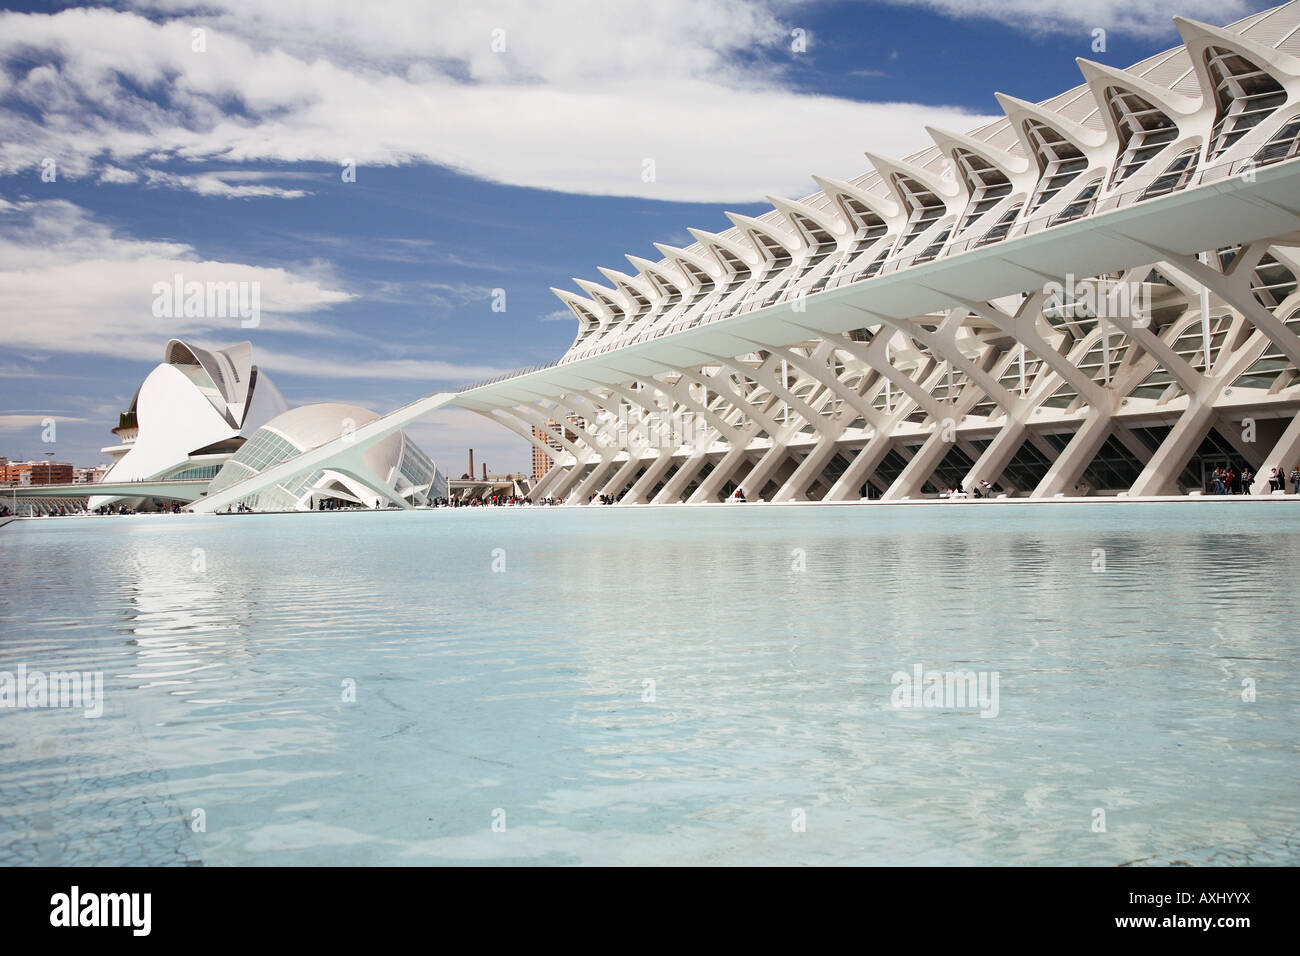 'Ciudad de las Artes y las Ciencias' or 'City of Arts and Sciences' designed by Santiago Calatrava in Valencia, Spain. Stock Photo